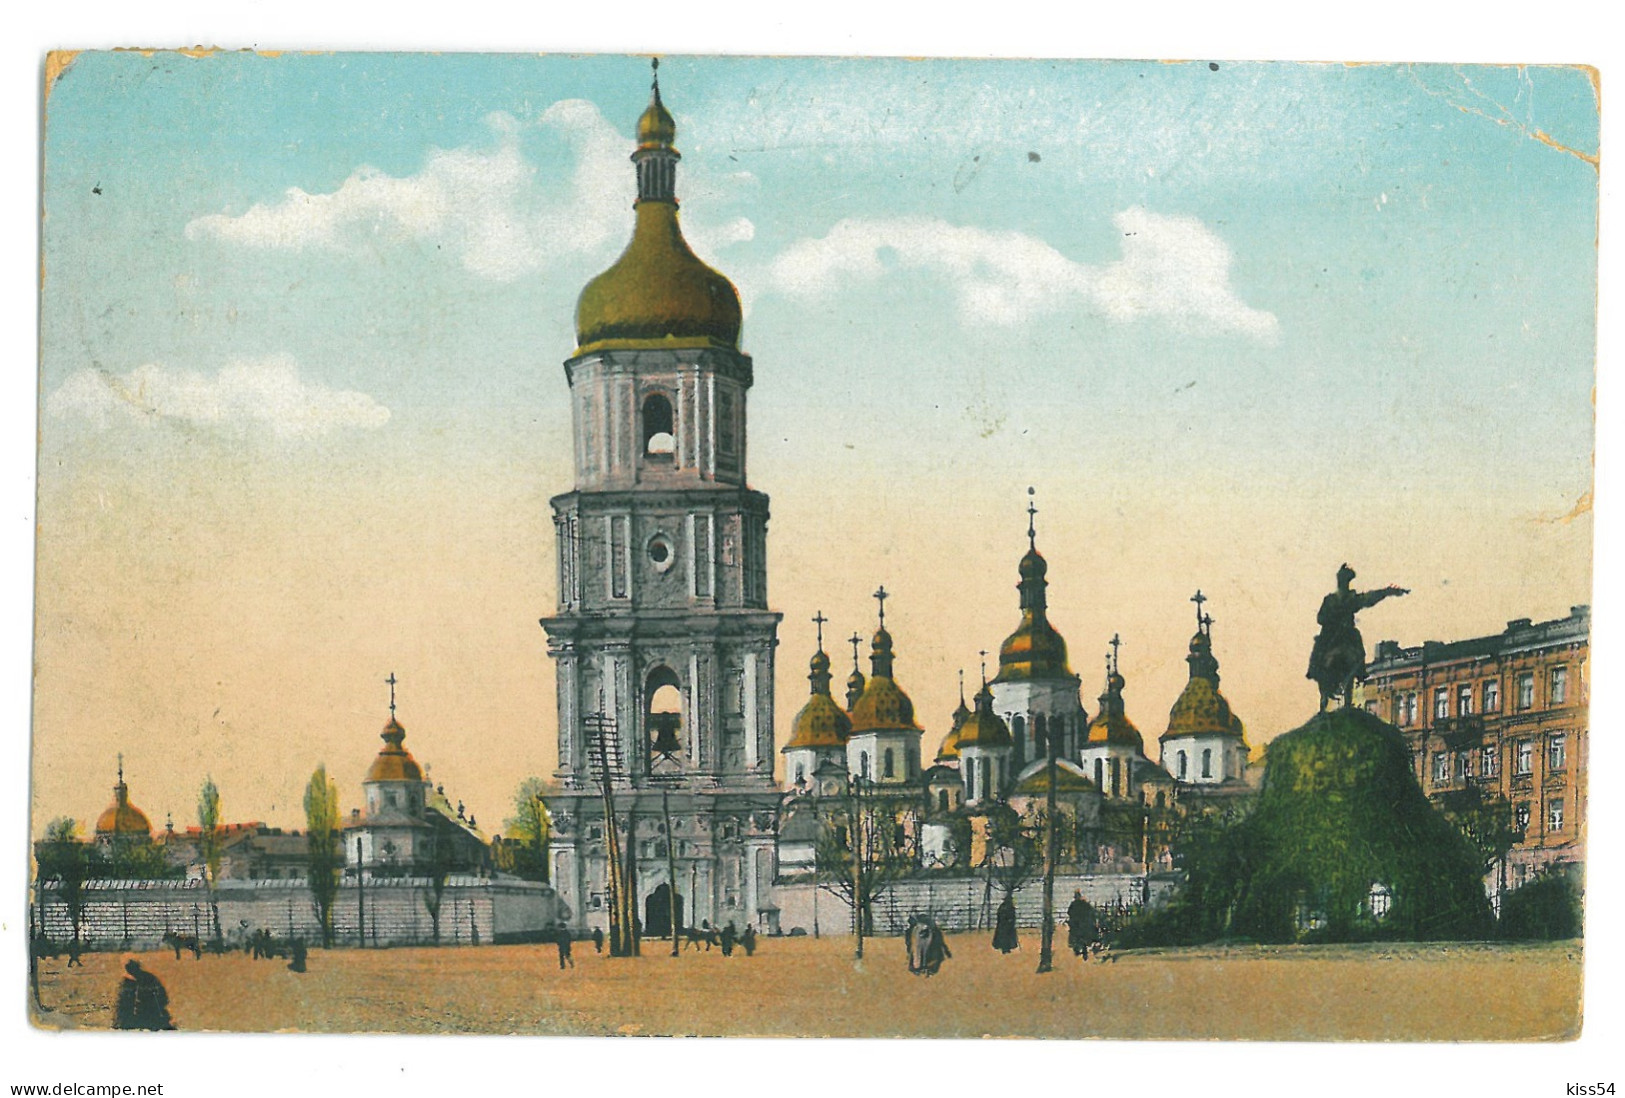 UK 60 - 23226 KIEV, Cathedral ST. SOPHIA, Ukraine - Old Postcard - Used - 1912 - Ucrania